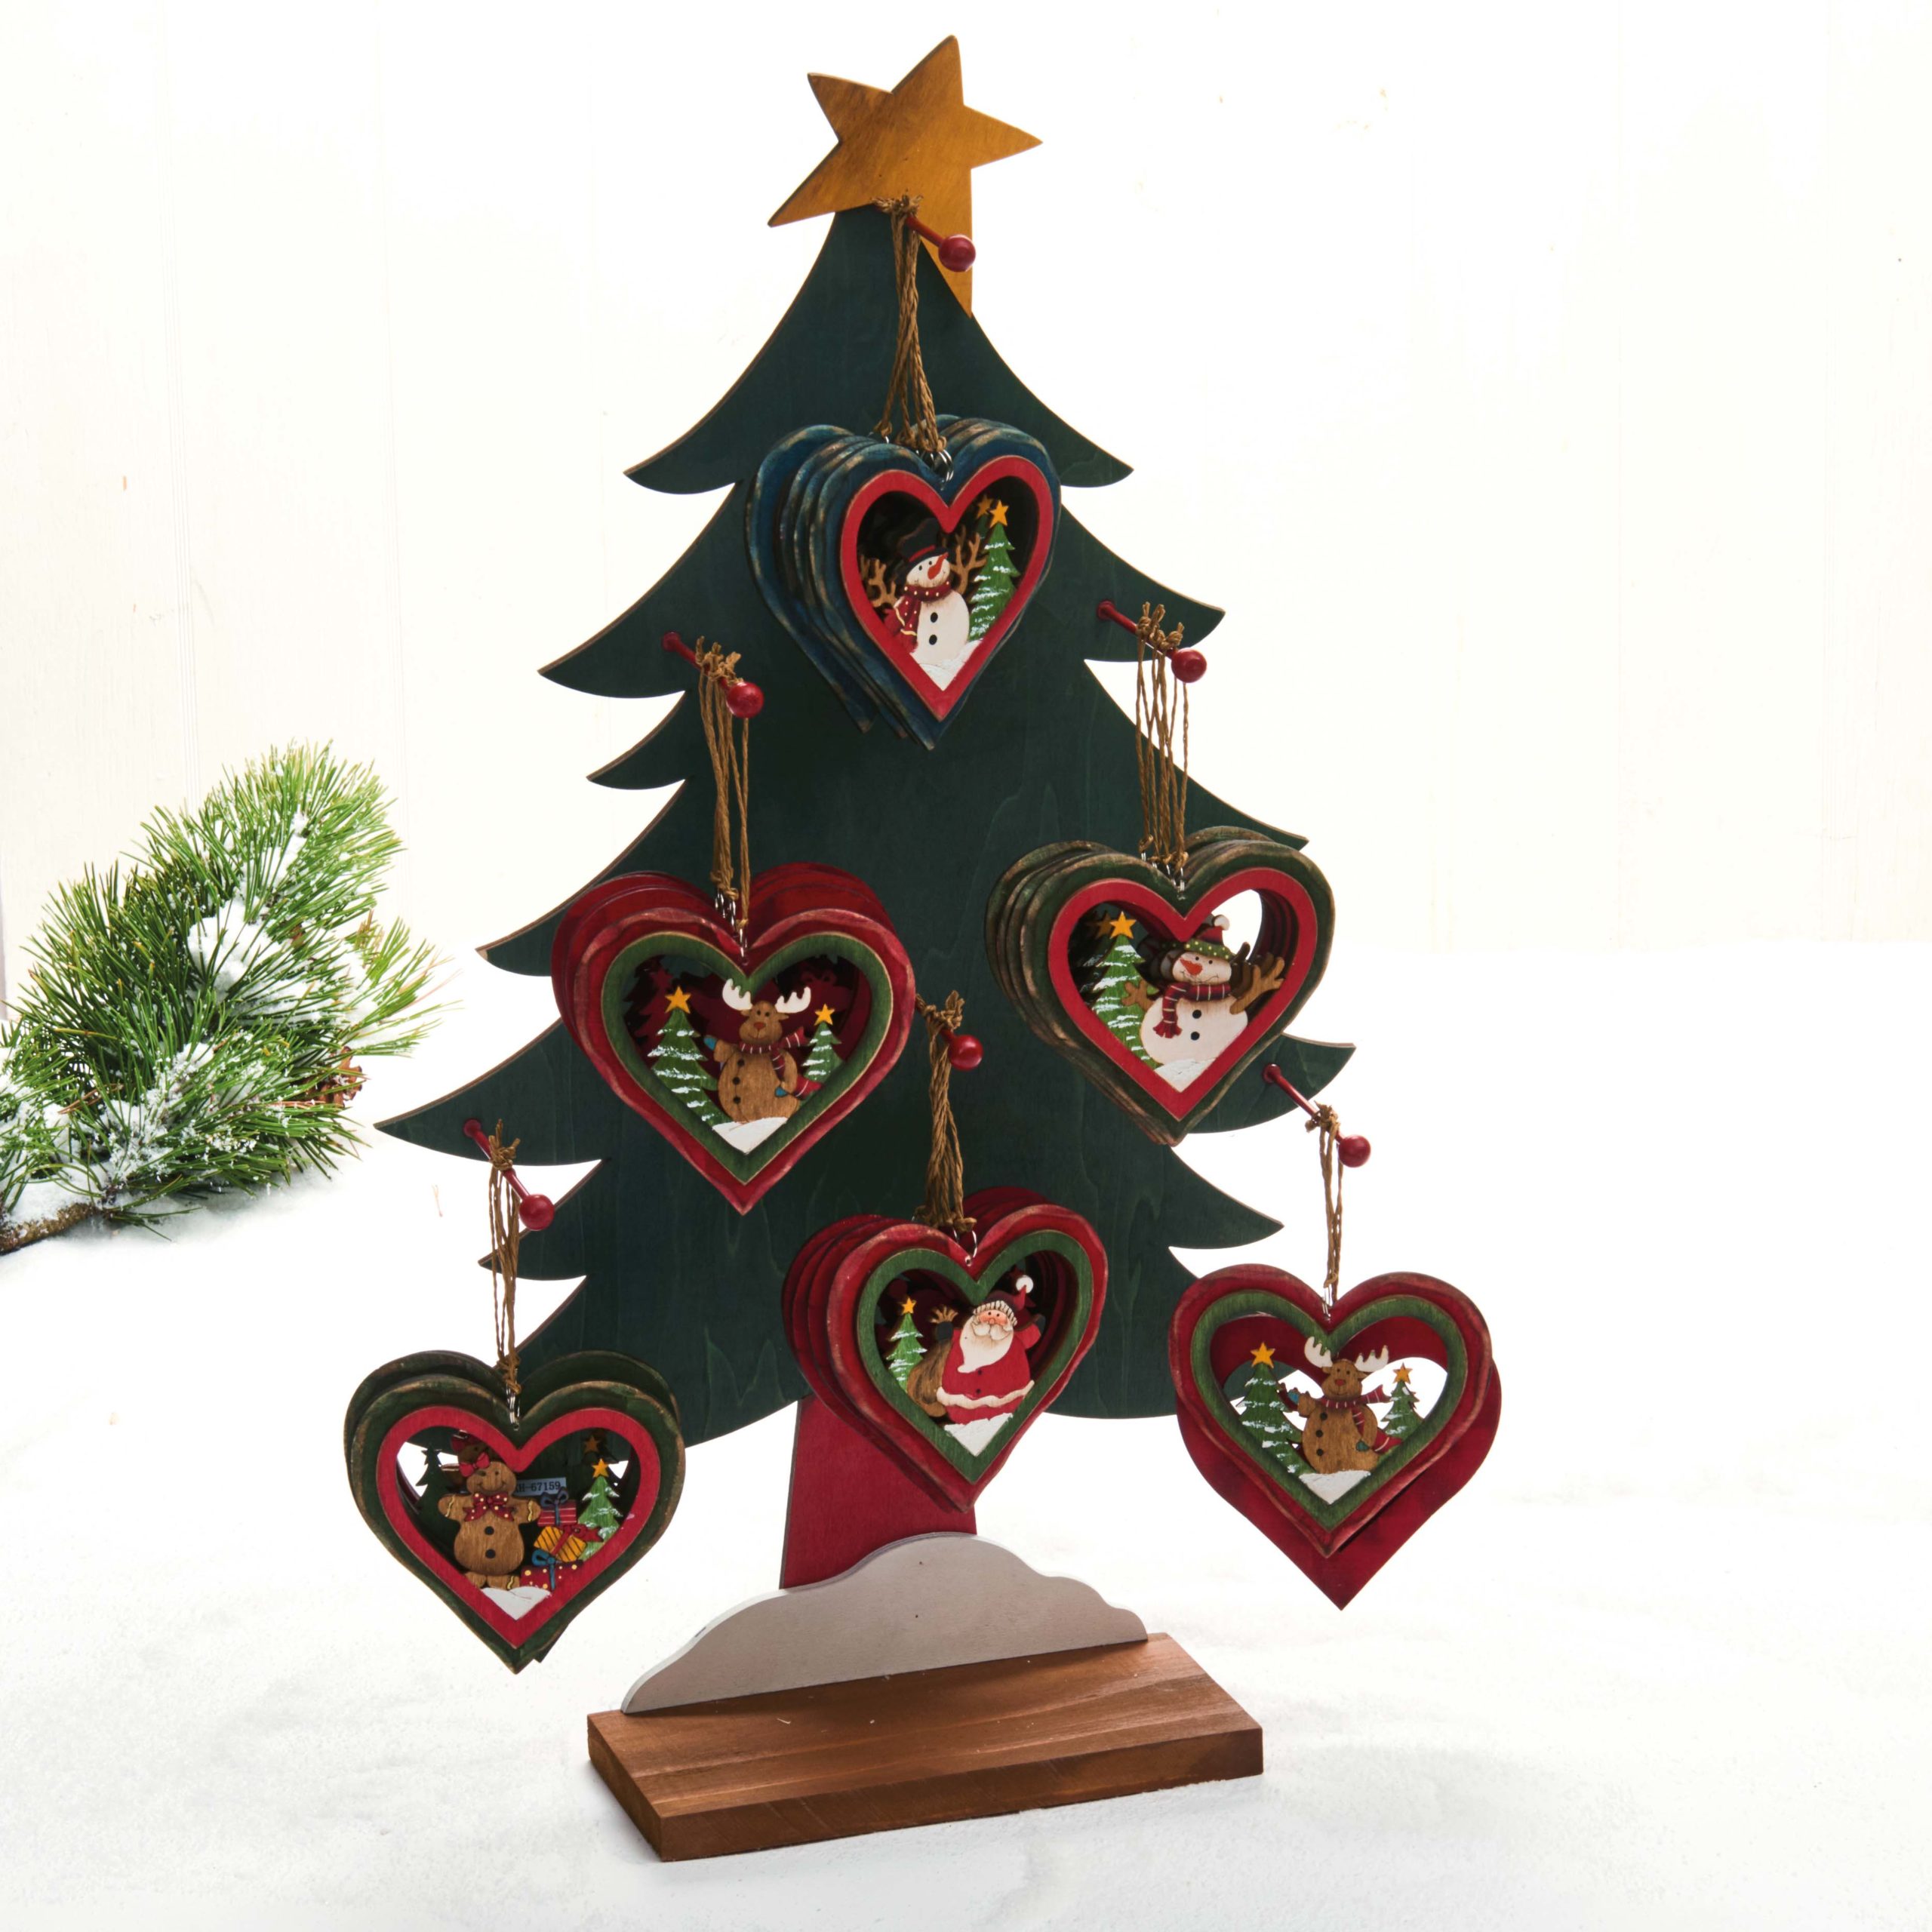 Hjertetræfigur til juletræet – Julemand